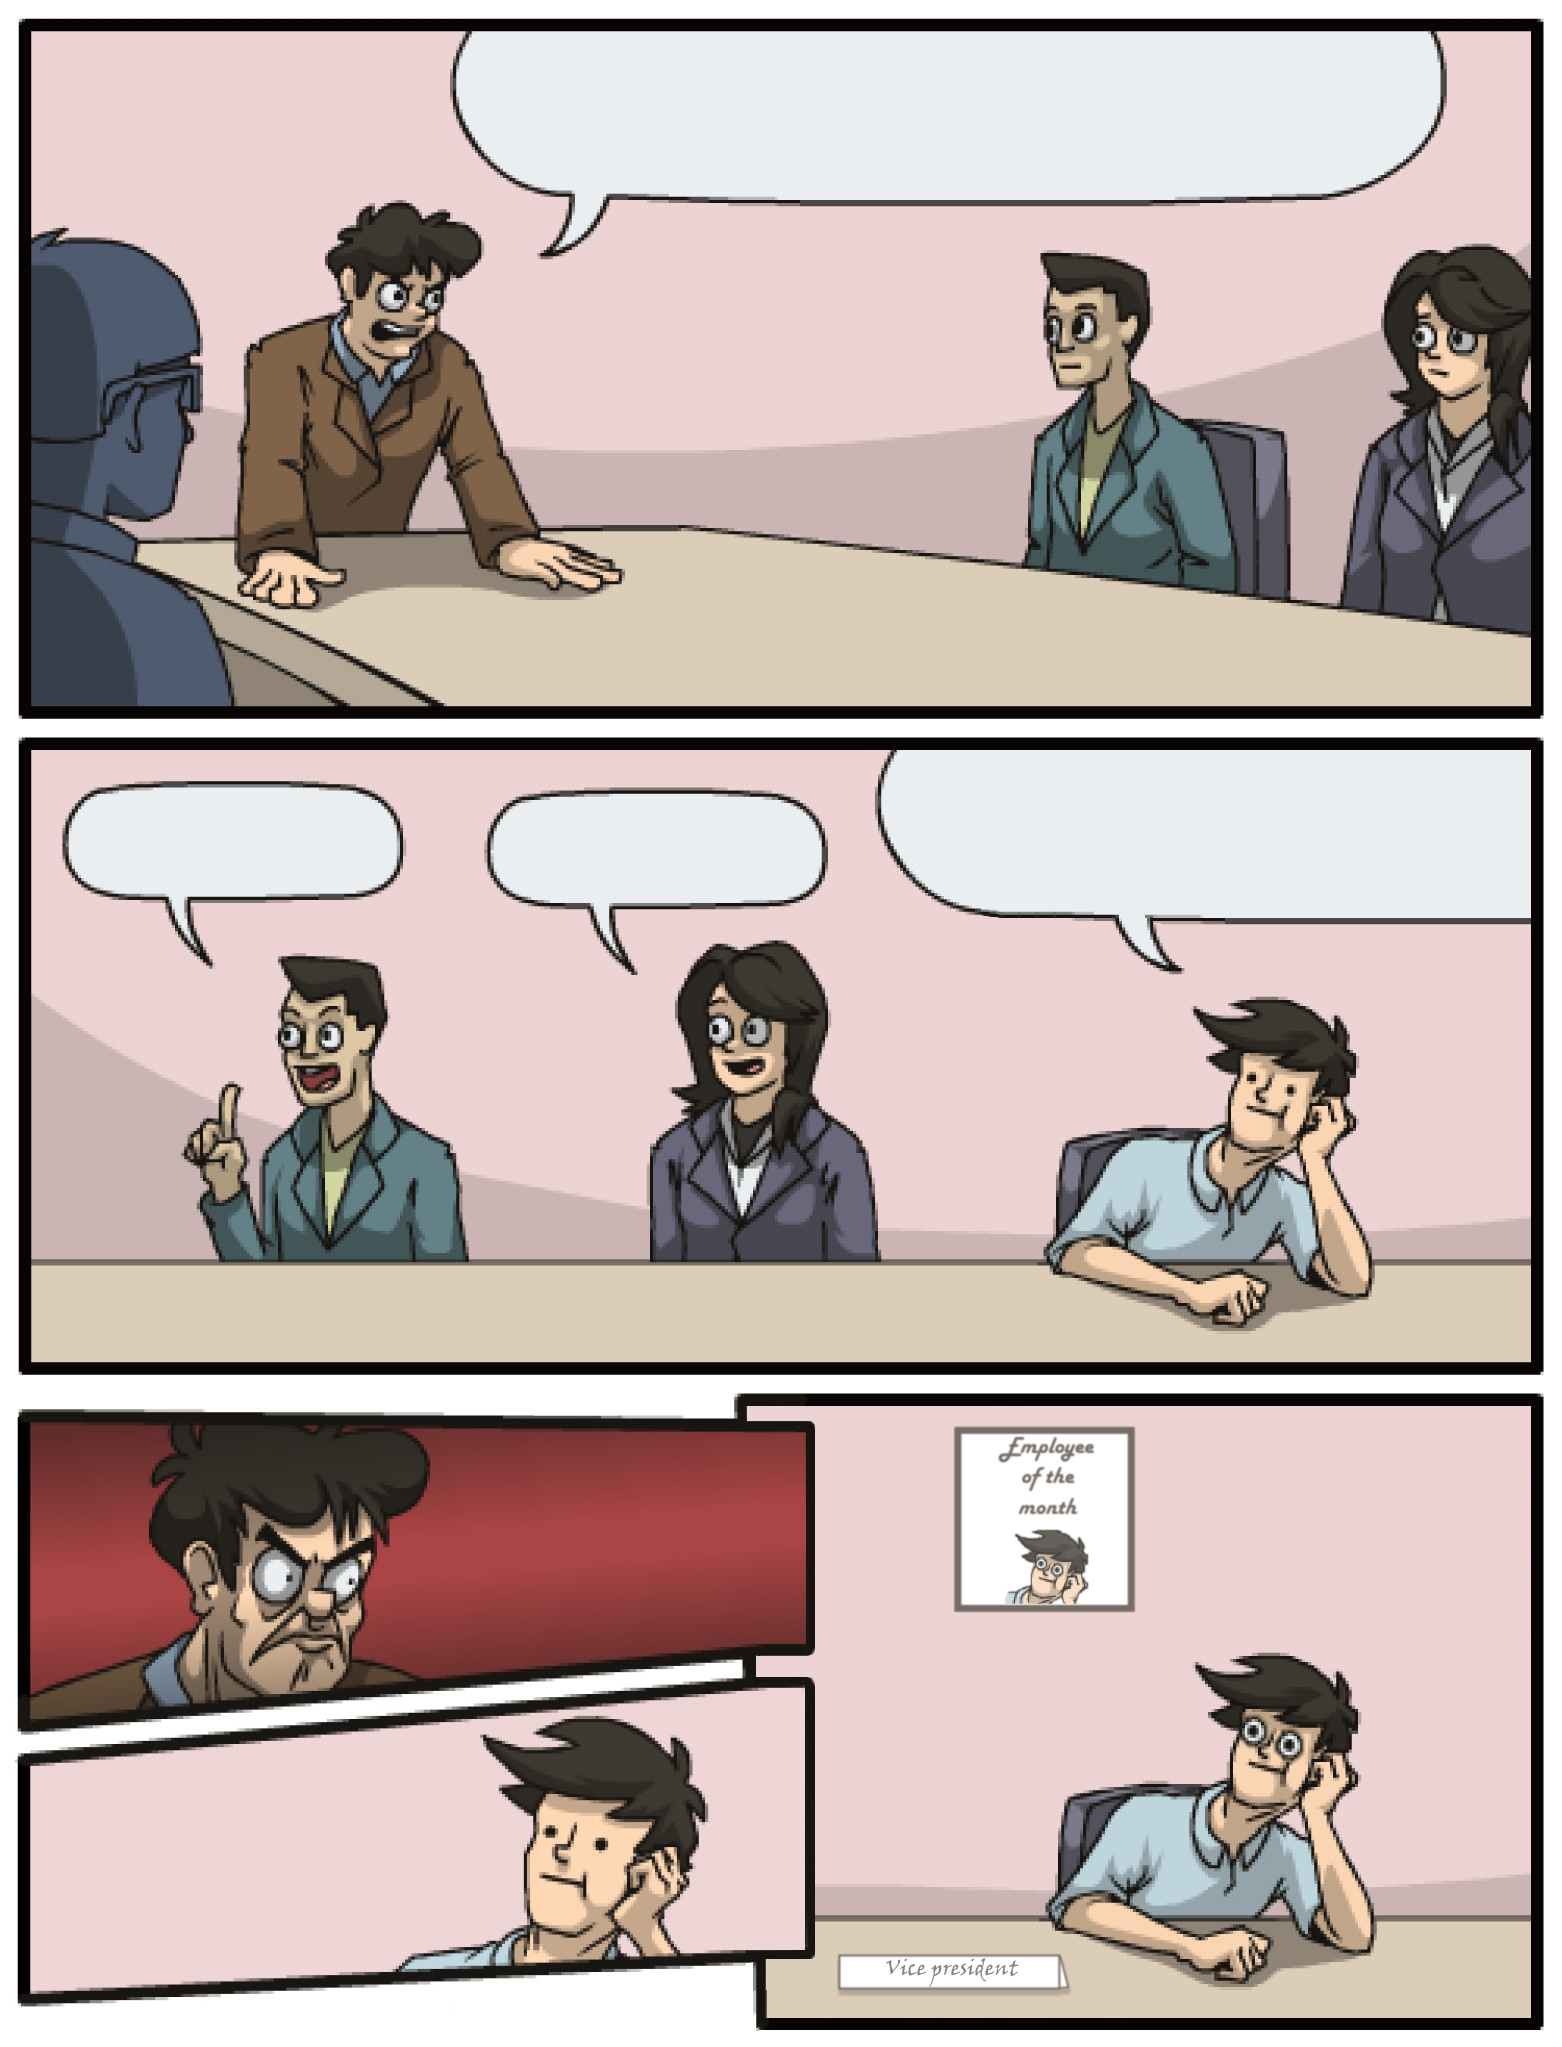 Boardroom meeting alternative ending Blank Meme Template